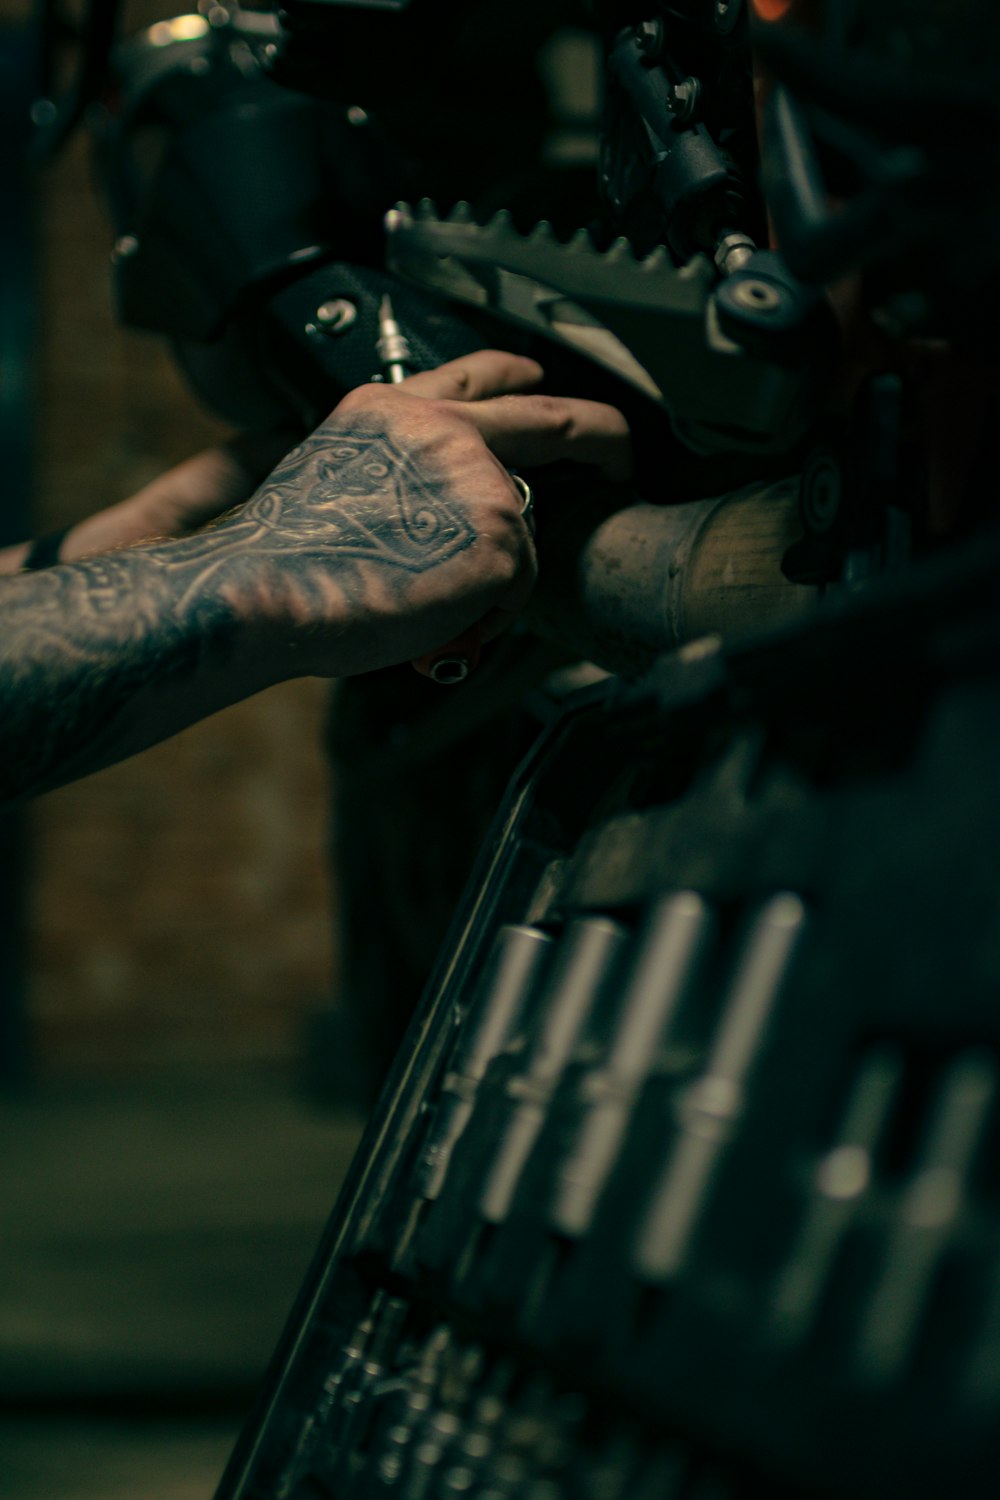 Ein Mann mit einem Tattoo auf dem Arm arbeitet an einem Motorrad